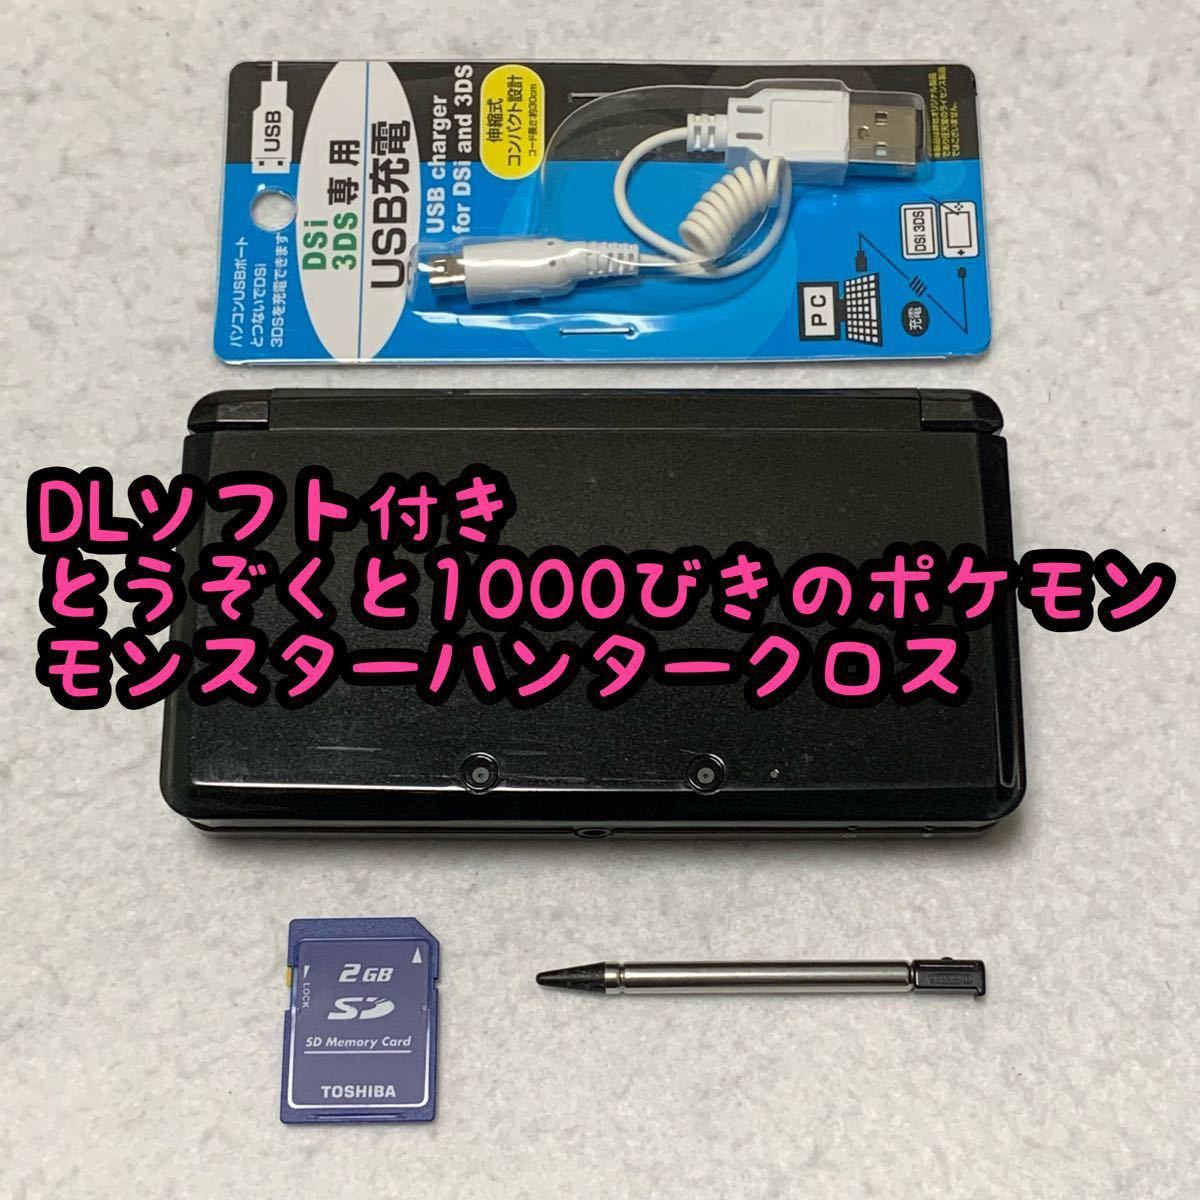 ニンテンドー 3DS コスモブラック 本体 充電器 タッチペン SD セット DL購入ソフト付き 0249